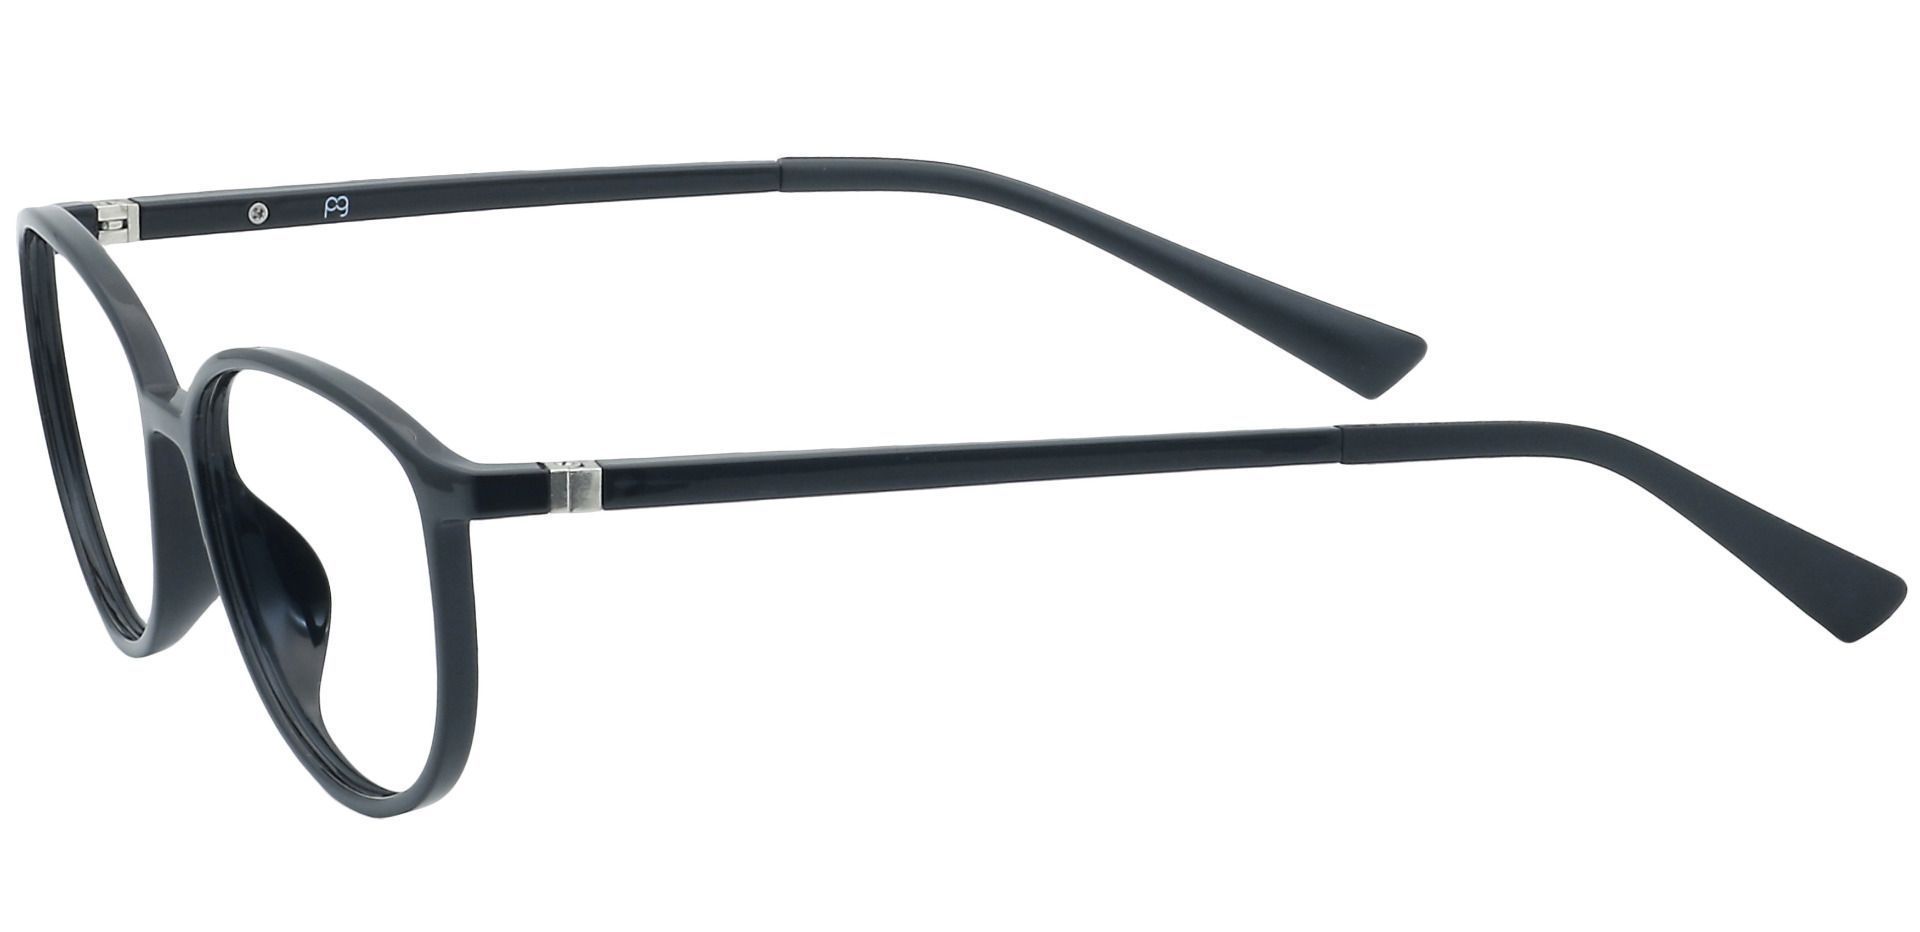 Melbourne Oval Non-Rx Glasses - Black